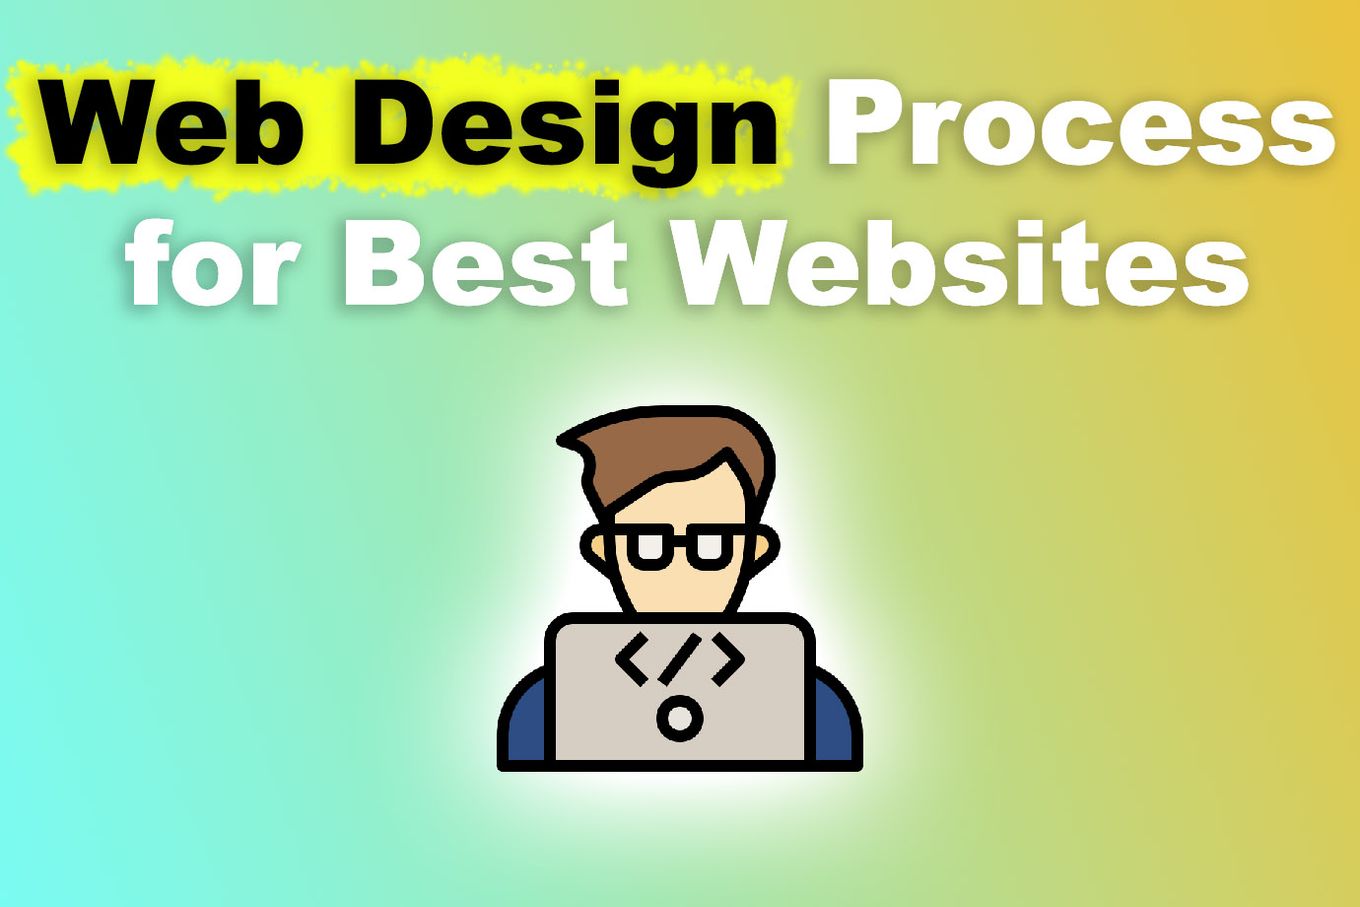 Web Design Process for Best Websites